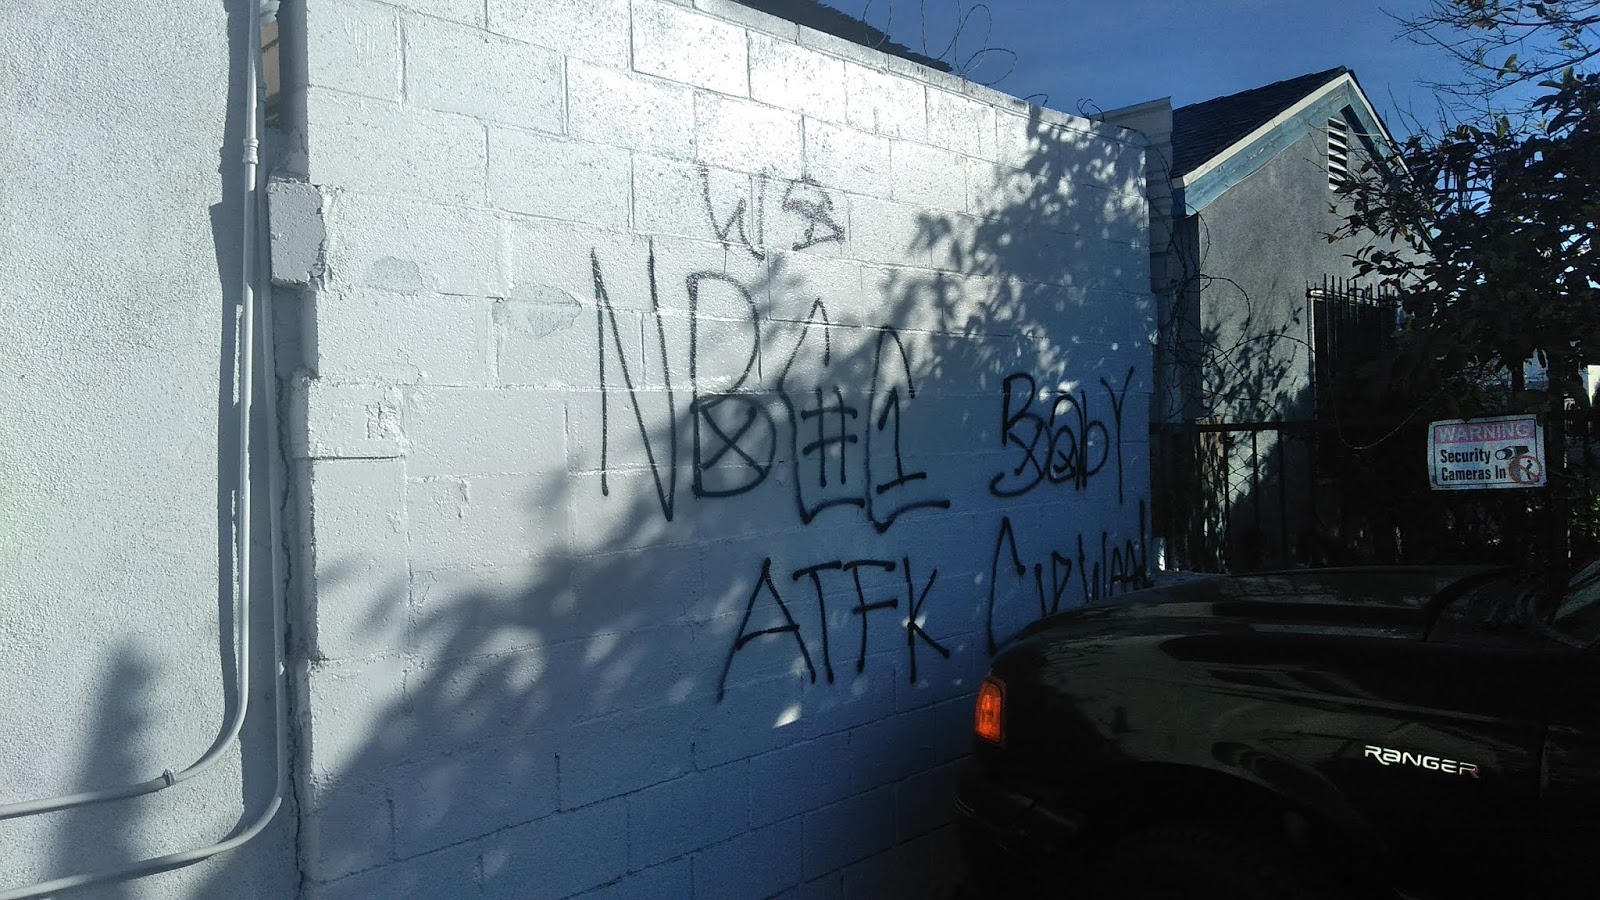 crip gangs graffiti: Nutty block compton crip ( NBCC )